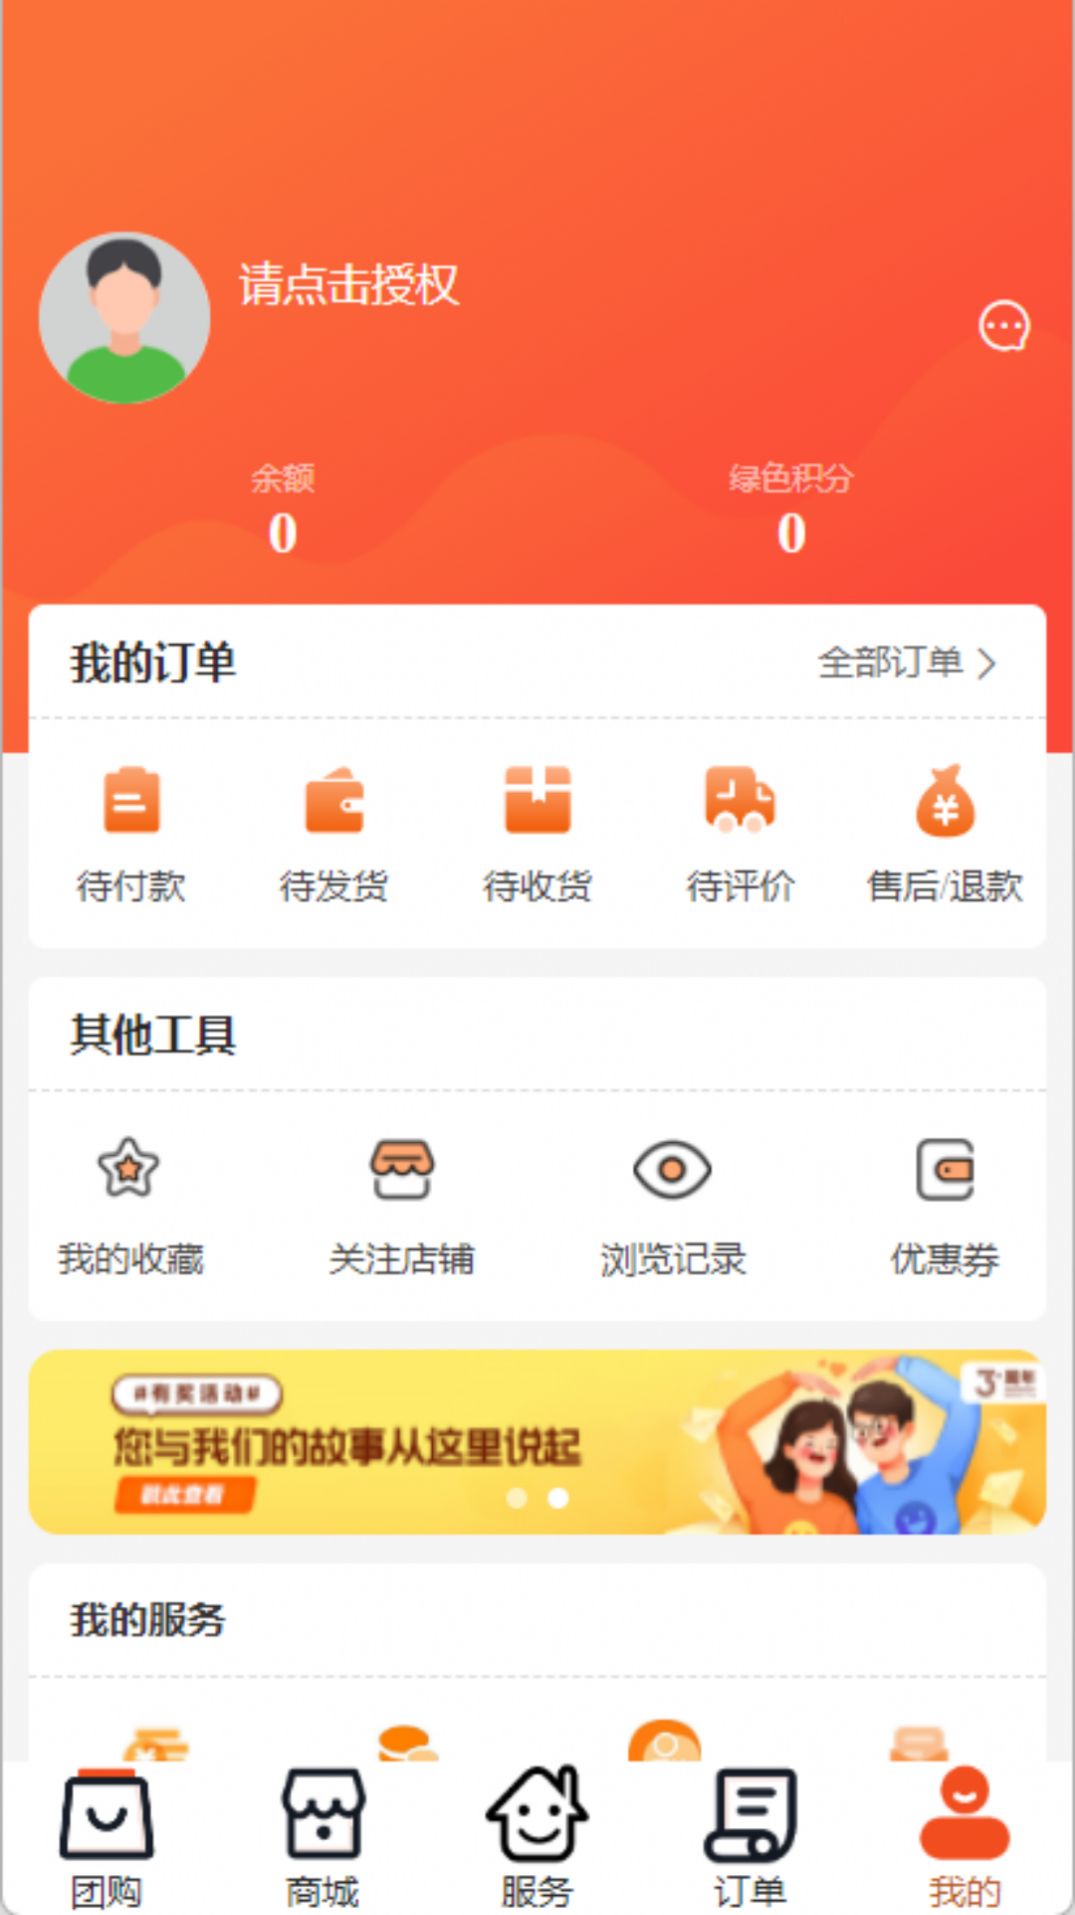 怡蜂恋生活社区平台购物app安卓版图片1